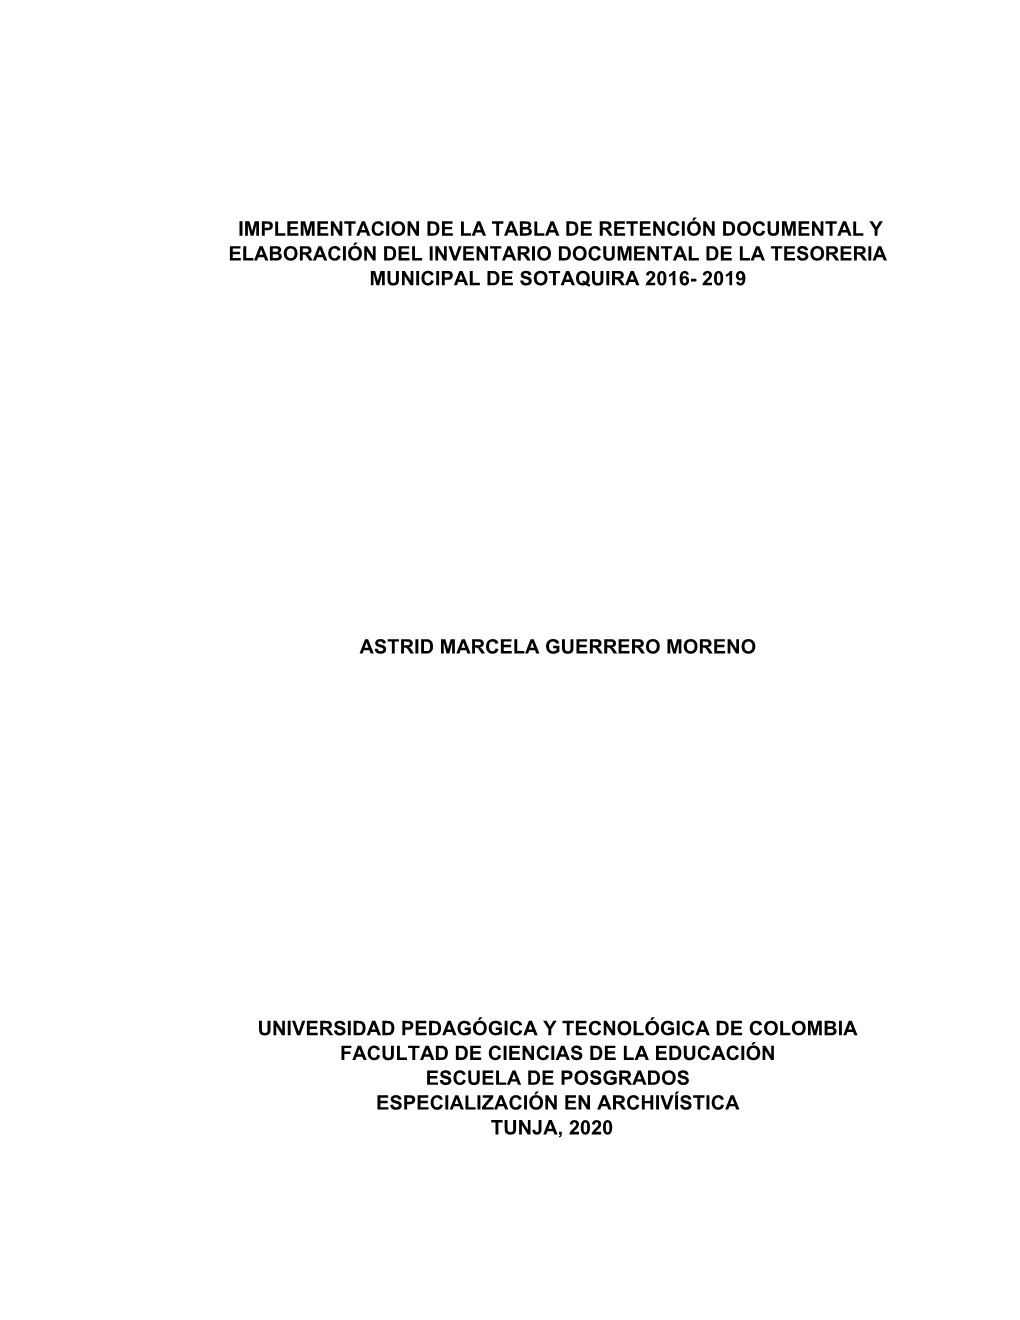 Implementacion De La Tabla De Retención Documental Y Elaboración Del Inventario Documental De La Tesoreria Municipal De Sotaquira 2016- 2019